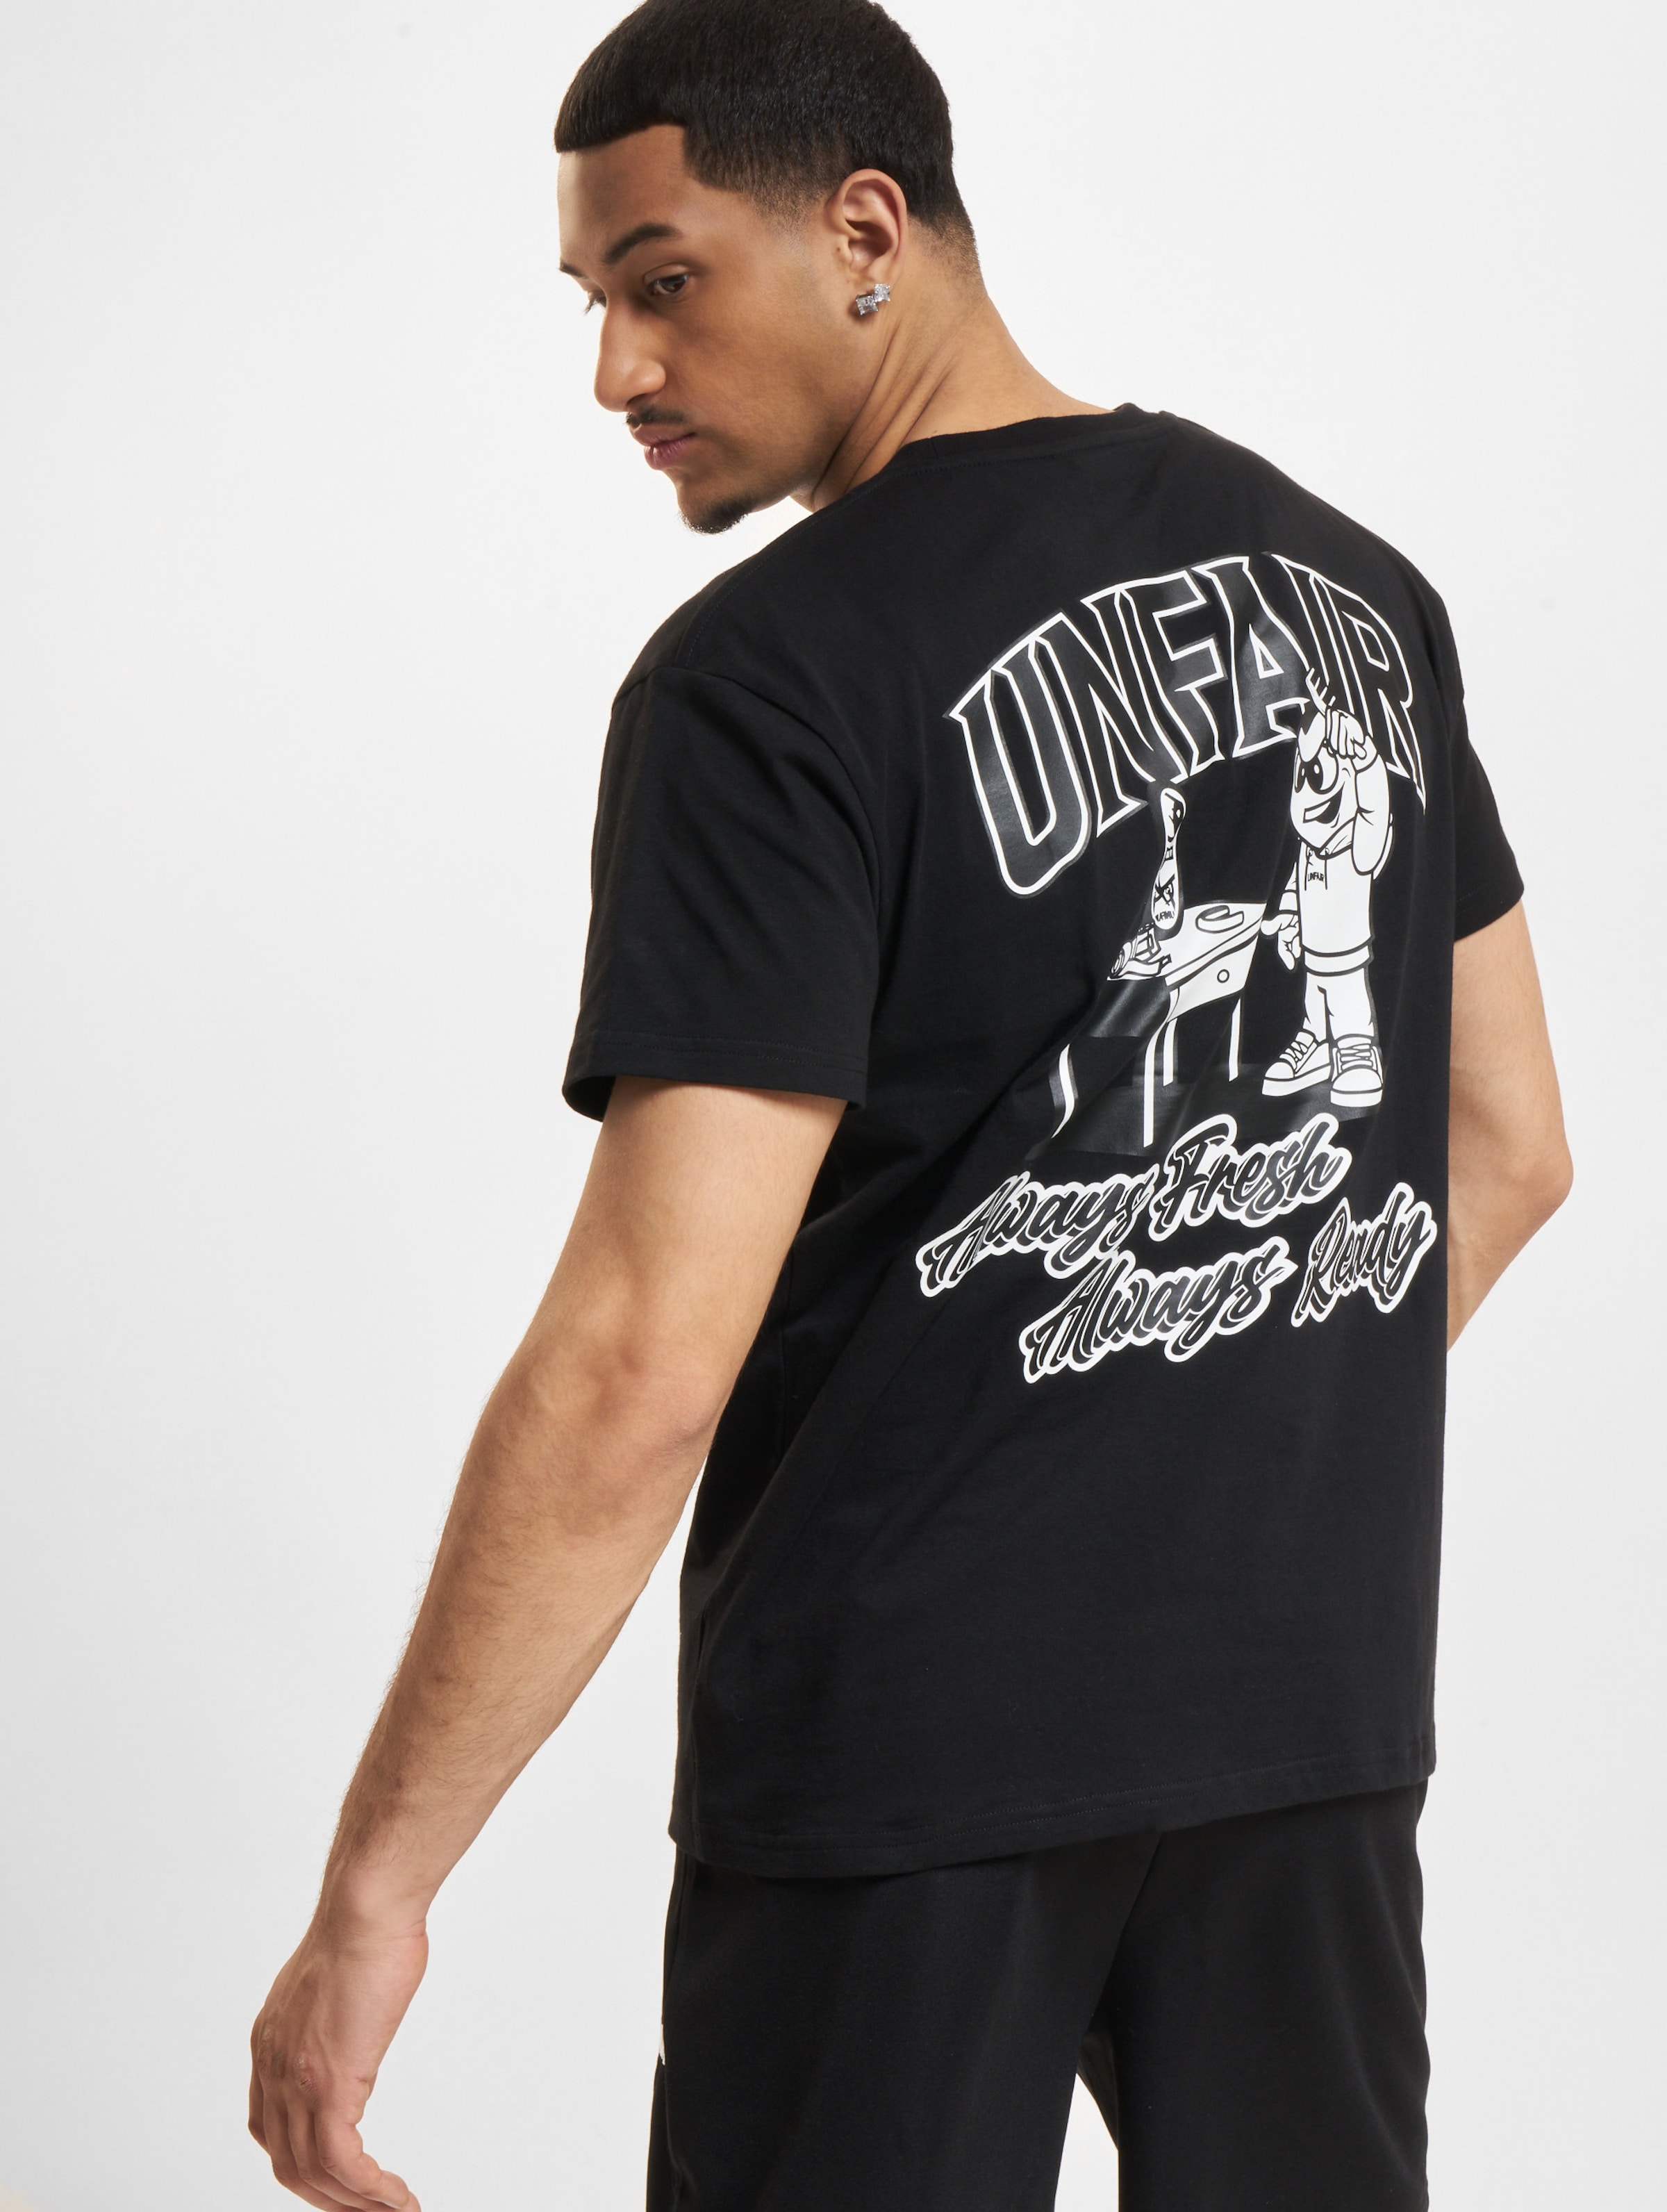 UNFAIR ATHLETICS Always Ready T-Shirt Männer,Unisex op kleur zwart, Maat 3XL